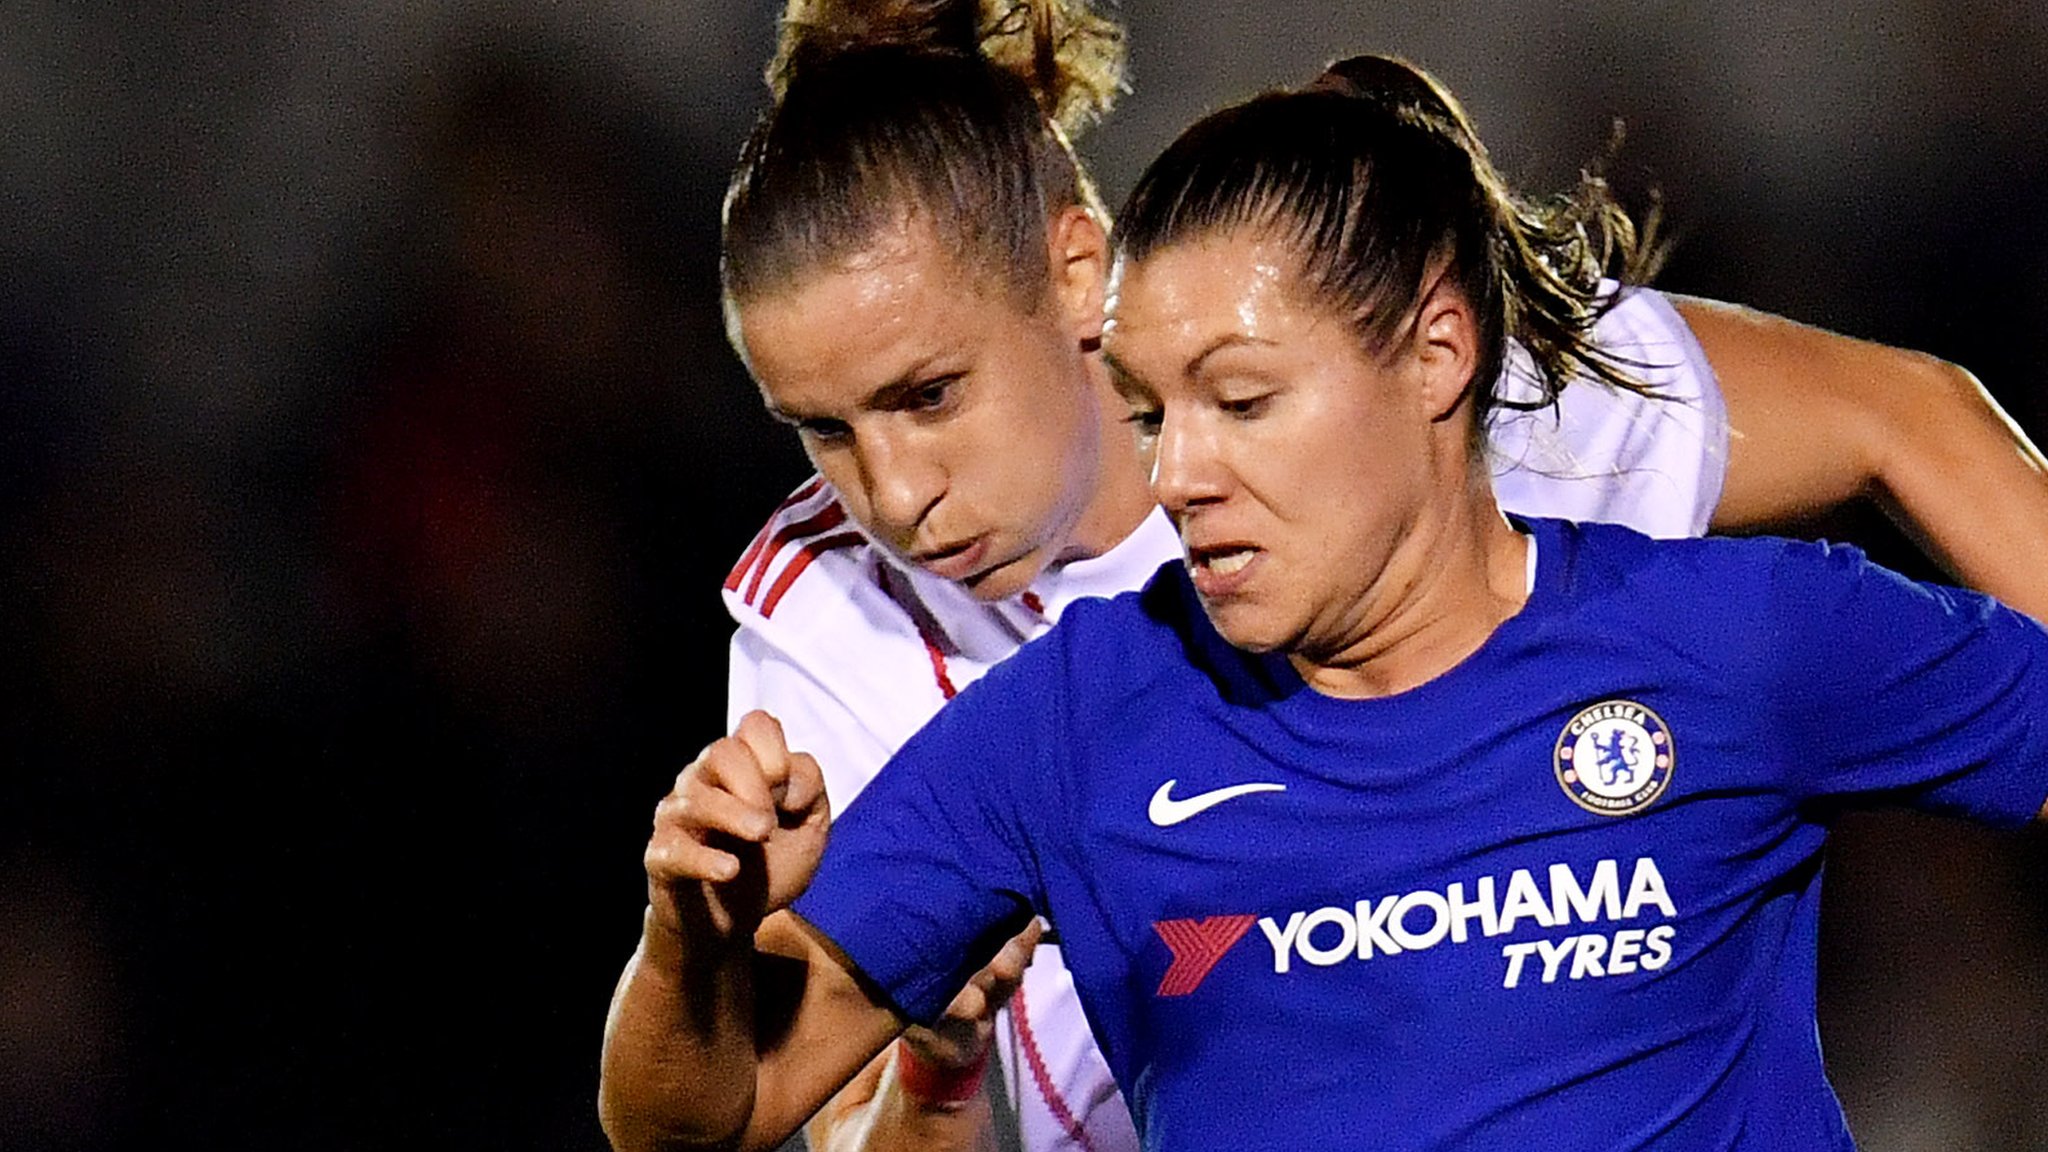 Chelsea reach Women's Champions League quarter-finals